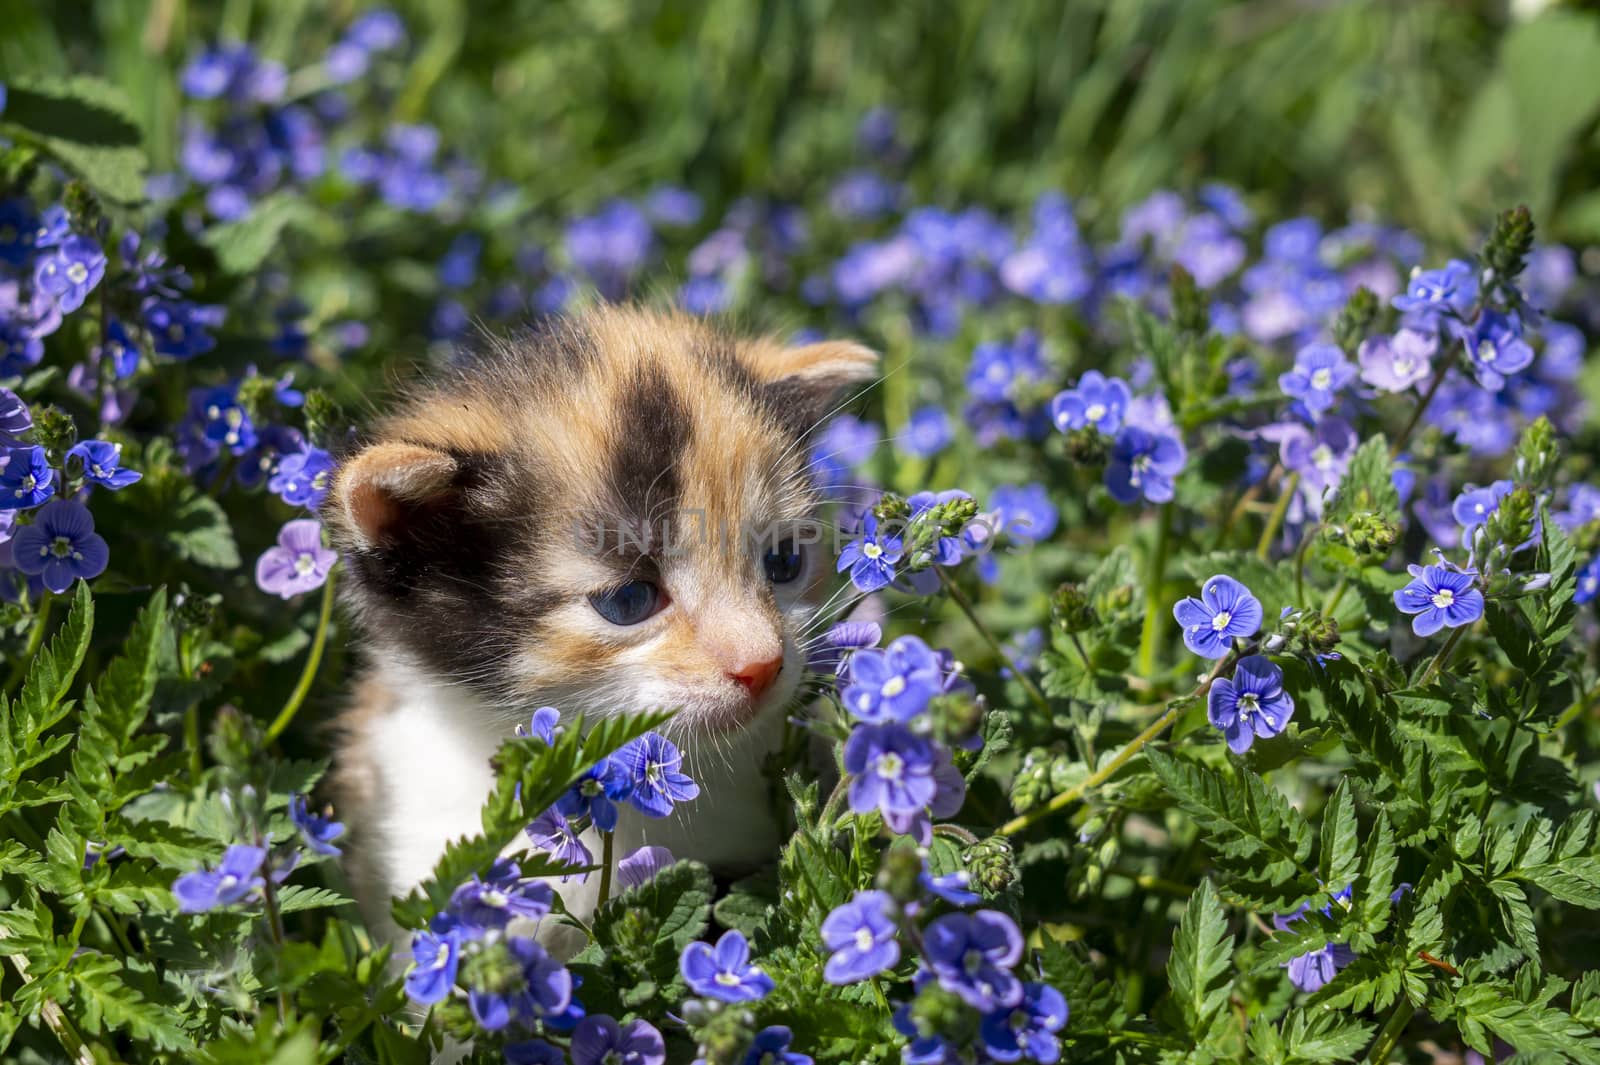 Little kitten amongst blue flowers in a spring meadow